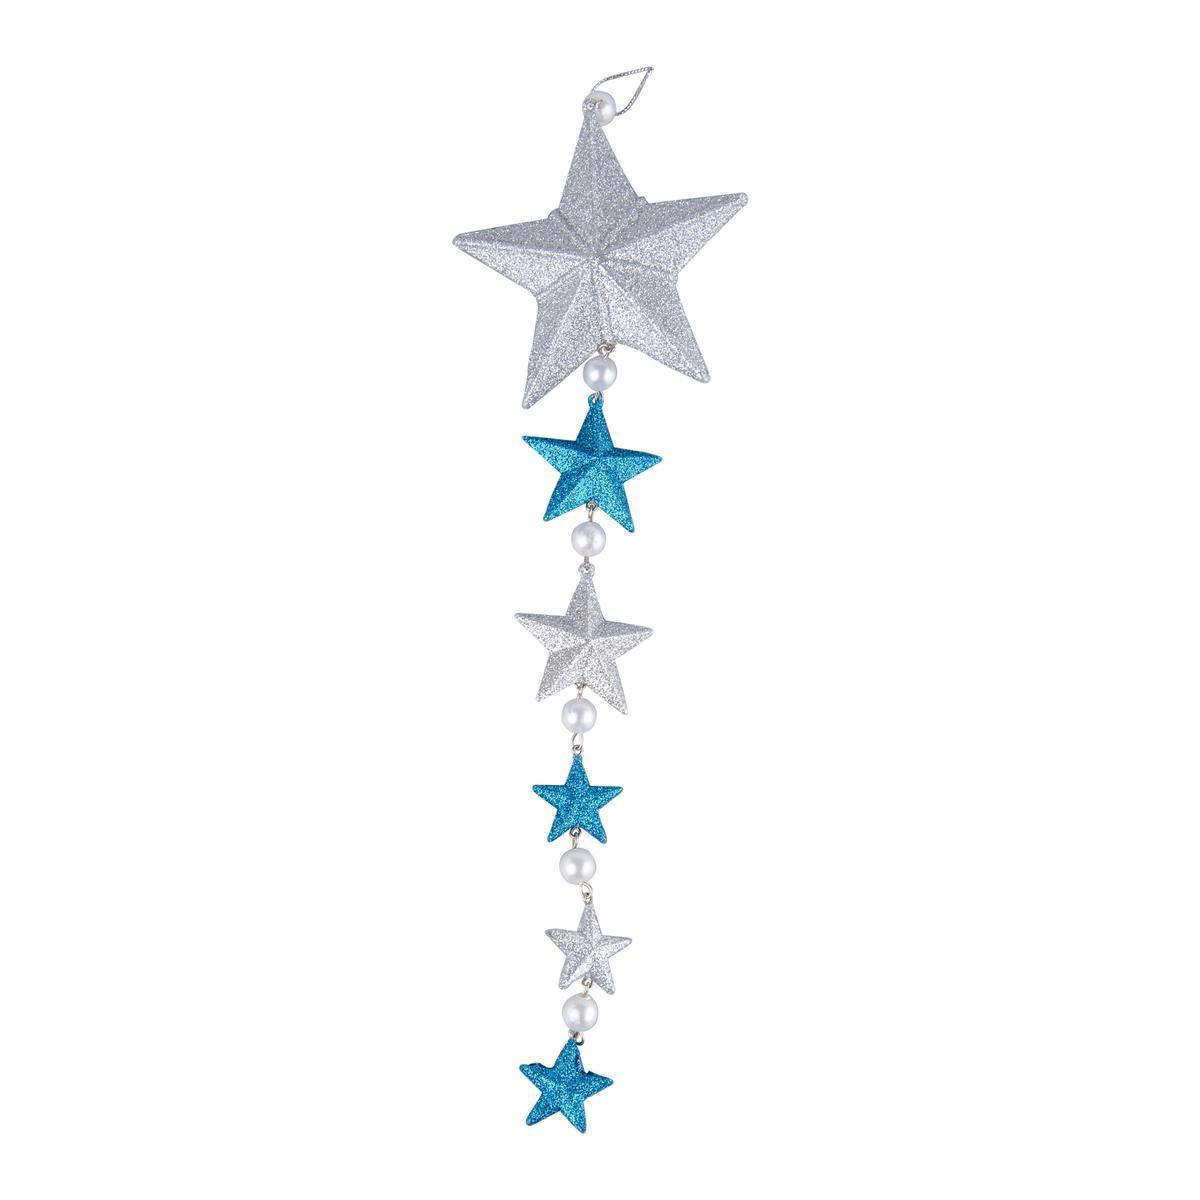 Suspension étoile - Plastique - 10 x 3 x H 38 cm - Bleu et argent